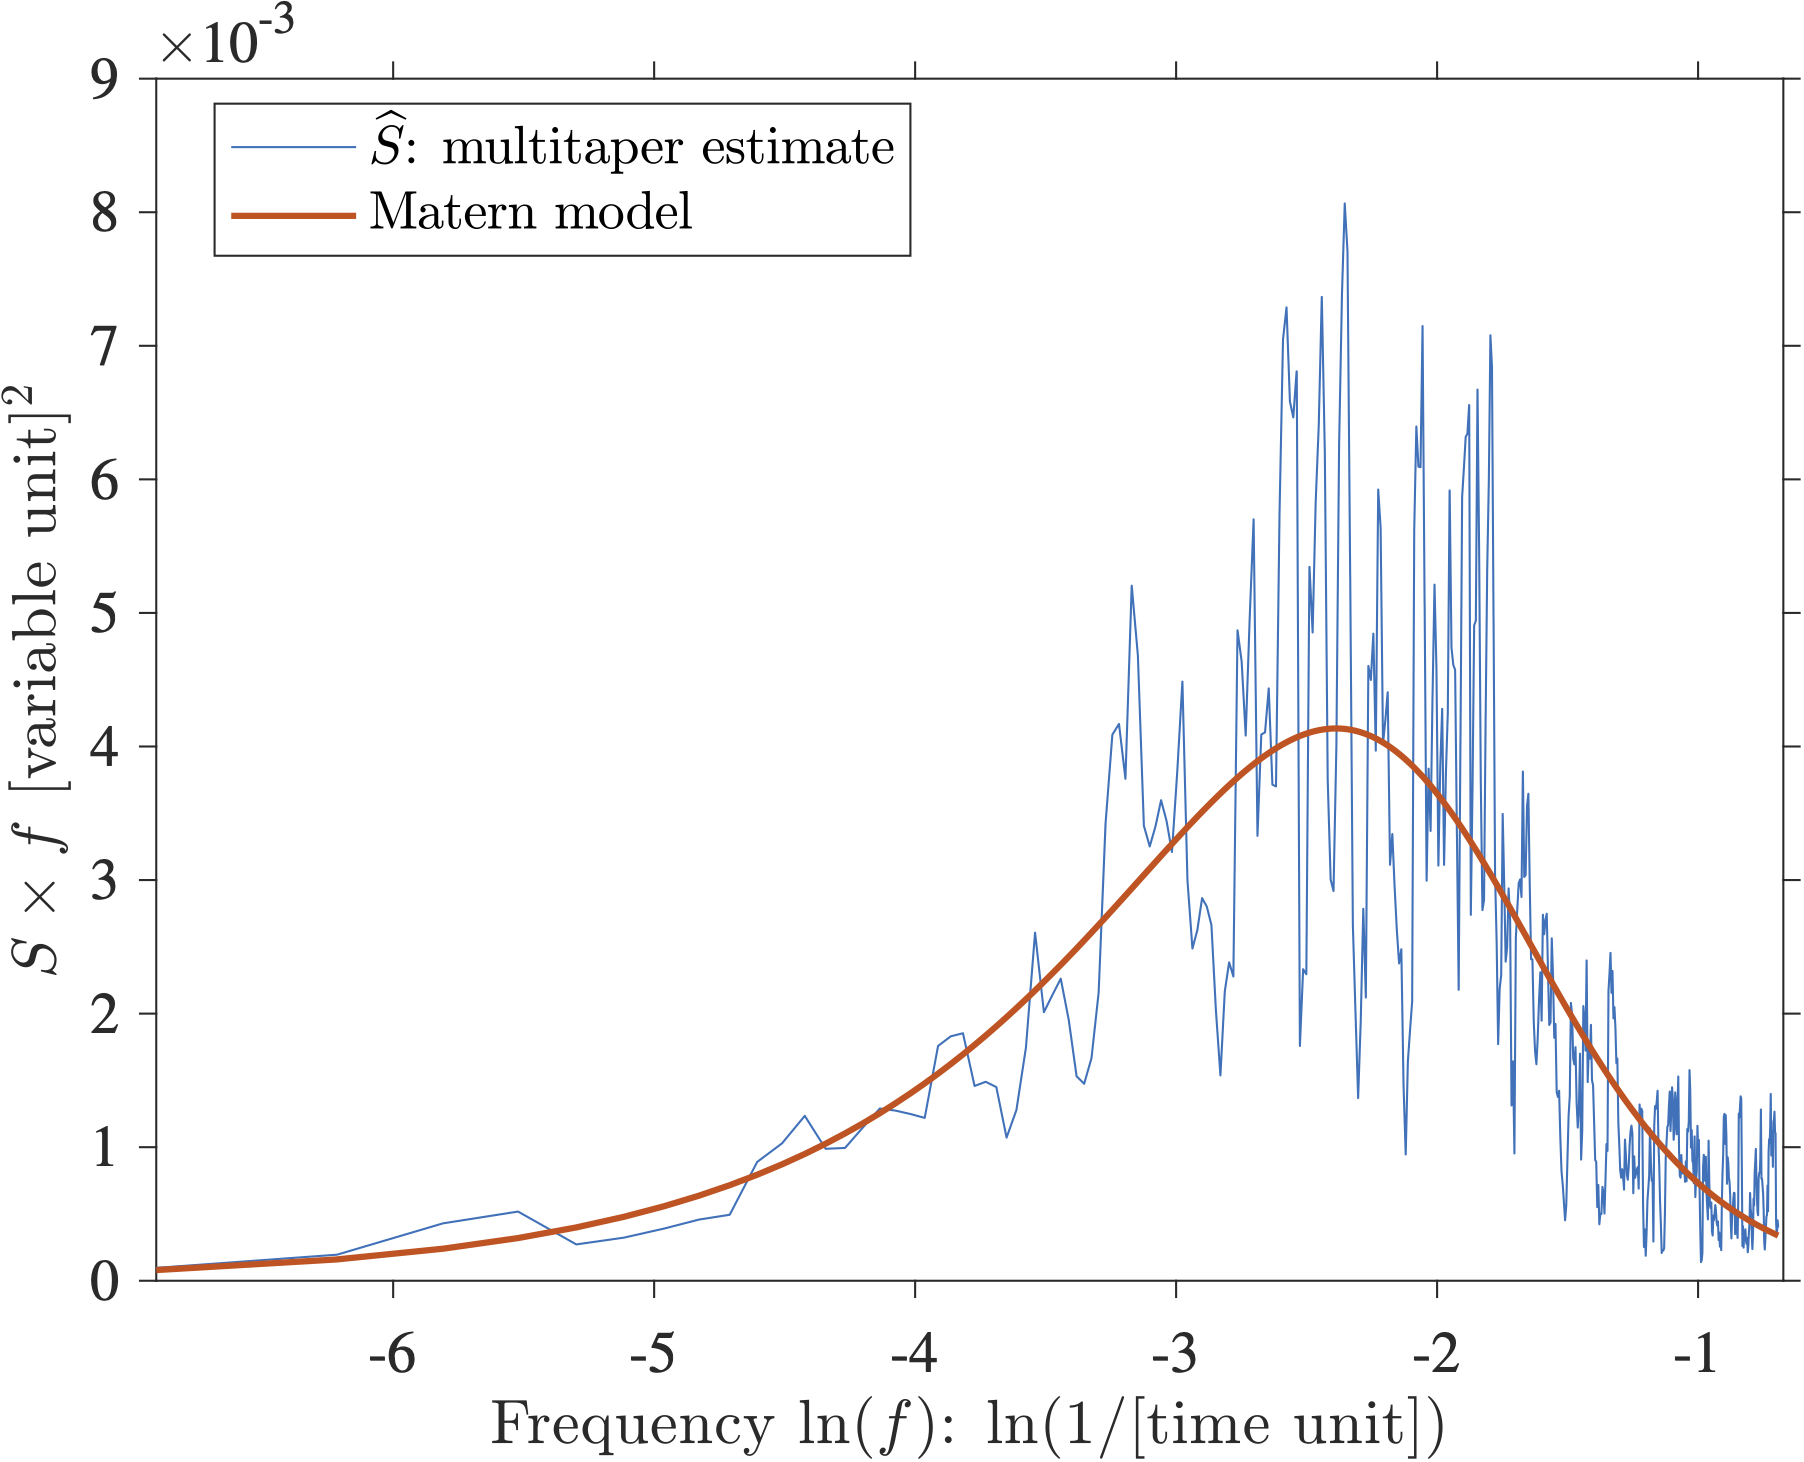 "Variance-preserving spectral estimate"